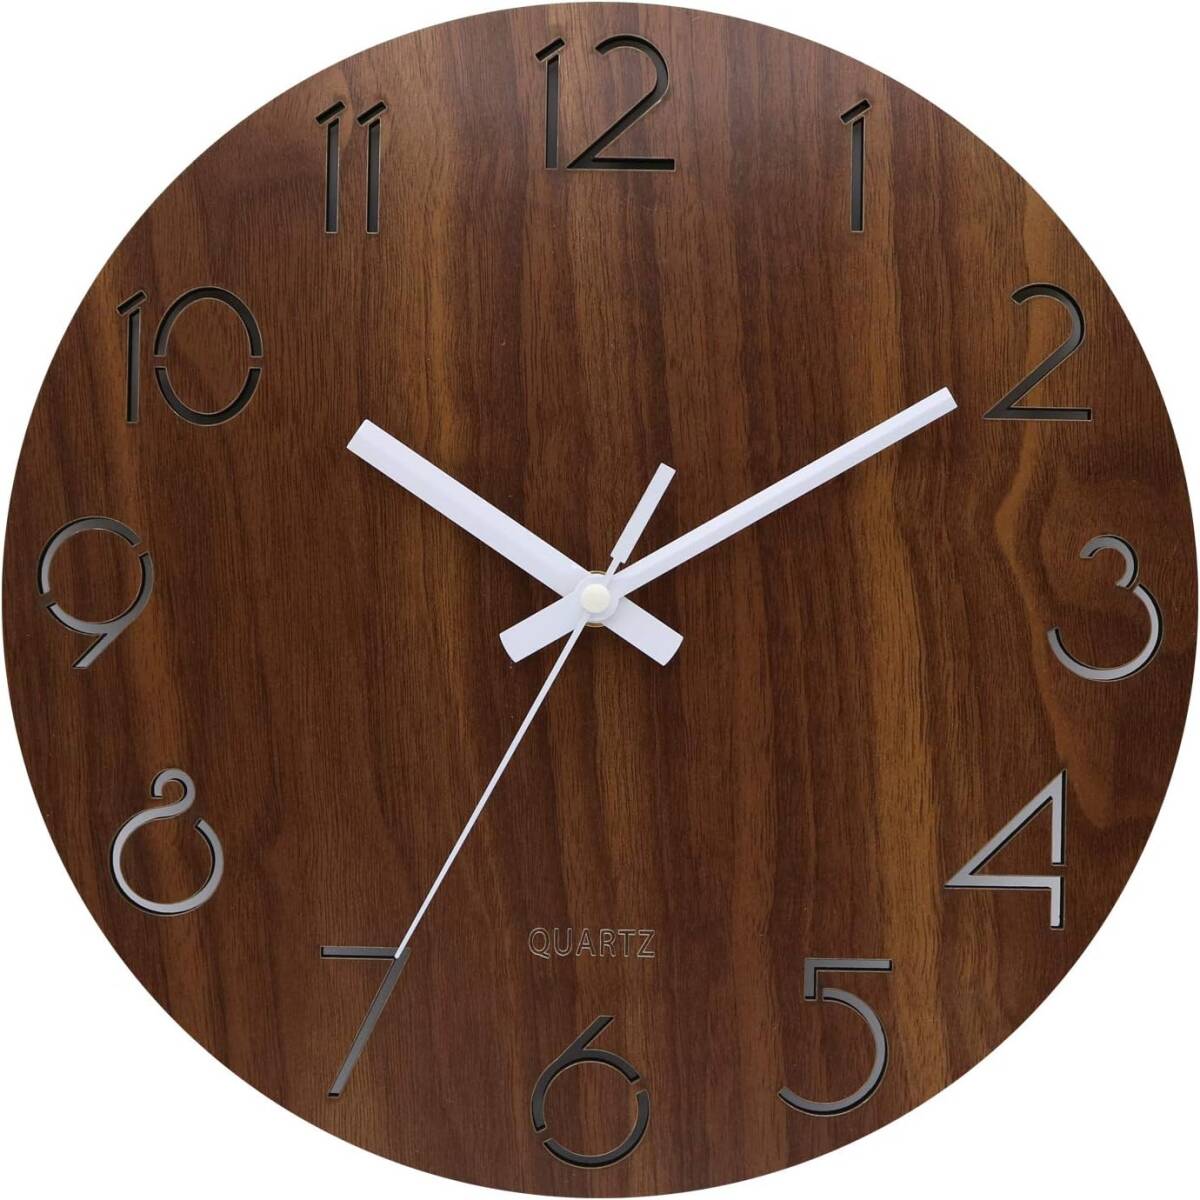 耐久性抜群 壁掛け時計 木製 サイレント連続秒針 透かし彫り アナログ 掛け時計